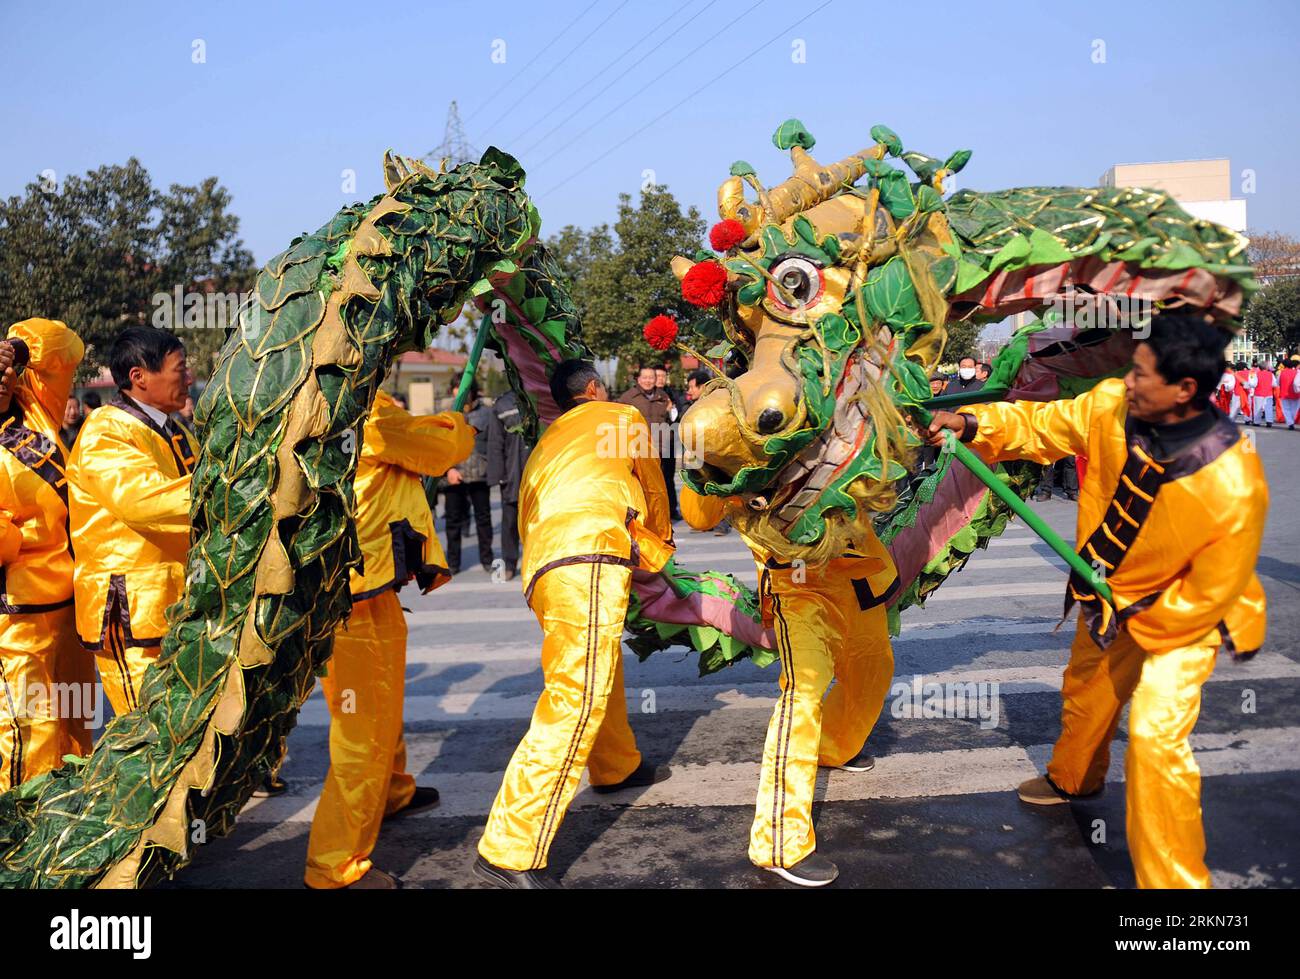 Bildnummer: 57012687 Datum: 03.02.2012 Copyright: imago/Xinhua (120203) -- DEQING, 3. Februar 2012 (Xinhua) -- Bauern führen einen Drachentanz im Deqing County in der ostchinesischen Provinz Zhejiang auf, um das bevorstehende Laternenfest am 3. Februar 2012 zu feiern. Das Laternenfest, das in diesem Jahr am 6. Februar stattfindet, markiert offiziell das Ende der chinesischen Neujahrsfeiern. (Xinhua/Xu Yu) (ljh) CHINA-ZHEJIANG-DE QING-LATERNE FESTIVAL-DRAGON DANCE (CN) PUBLICATIONxNOTxINxCHN Gesellschaft Tradition Laternenfest Drachen Drachentanz Tanz xns x0x 2012 quer 57012687 Datum 03 02 2012 Copyright Imago XI Stockfoto